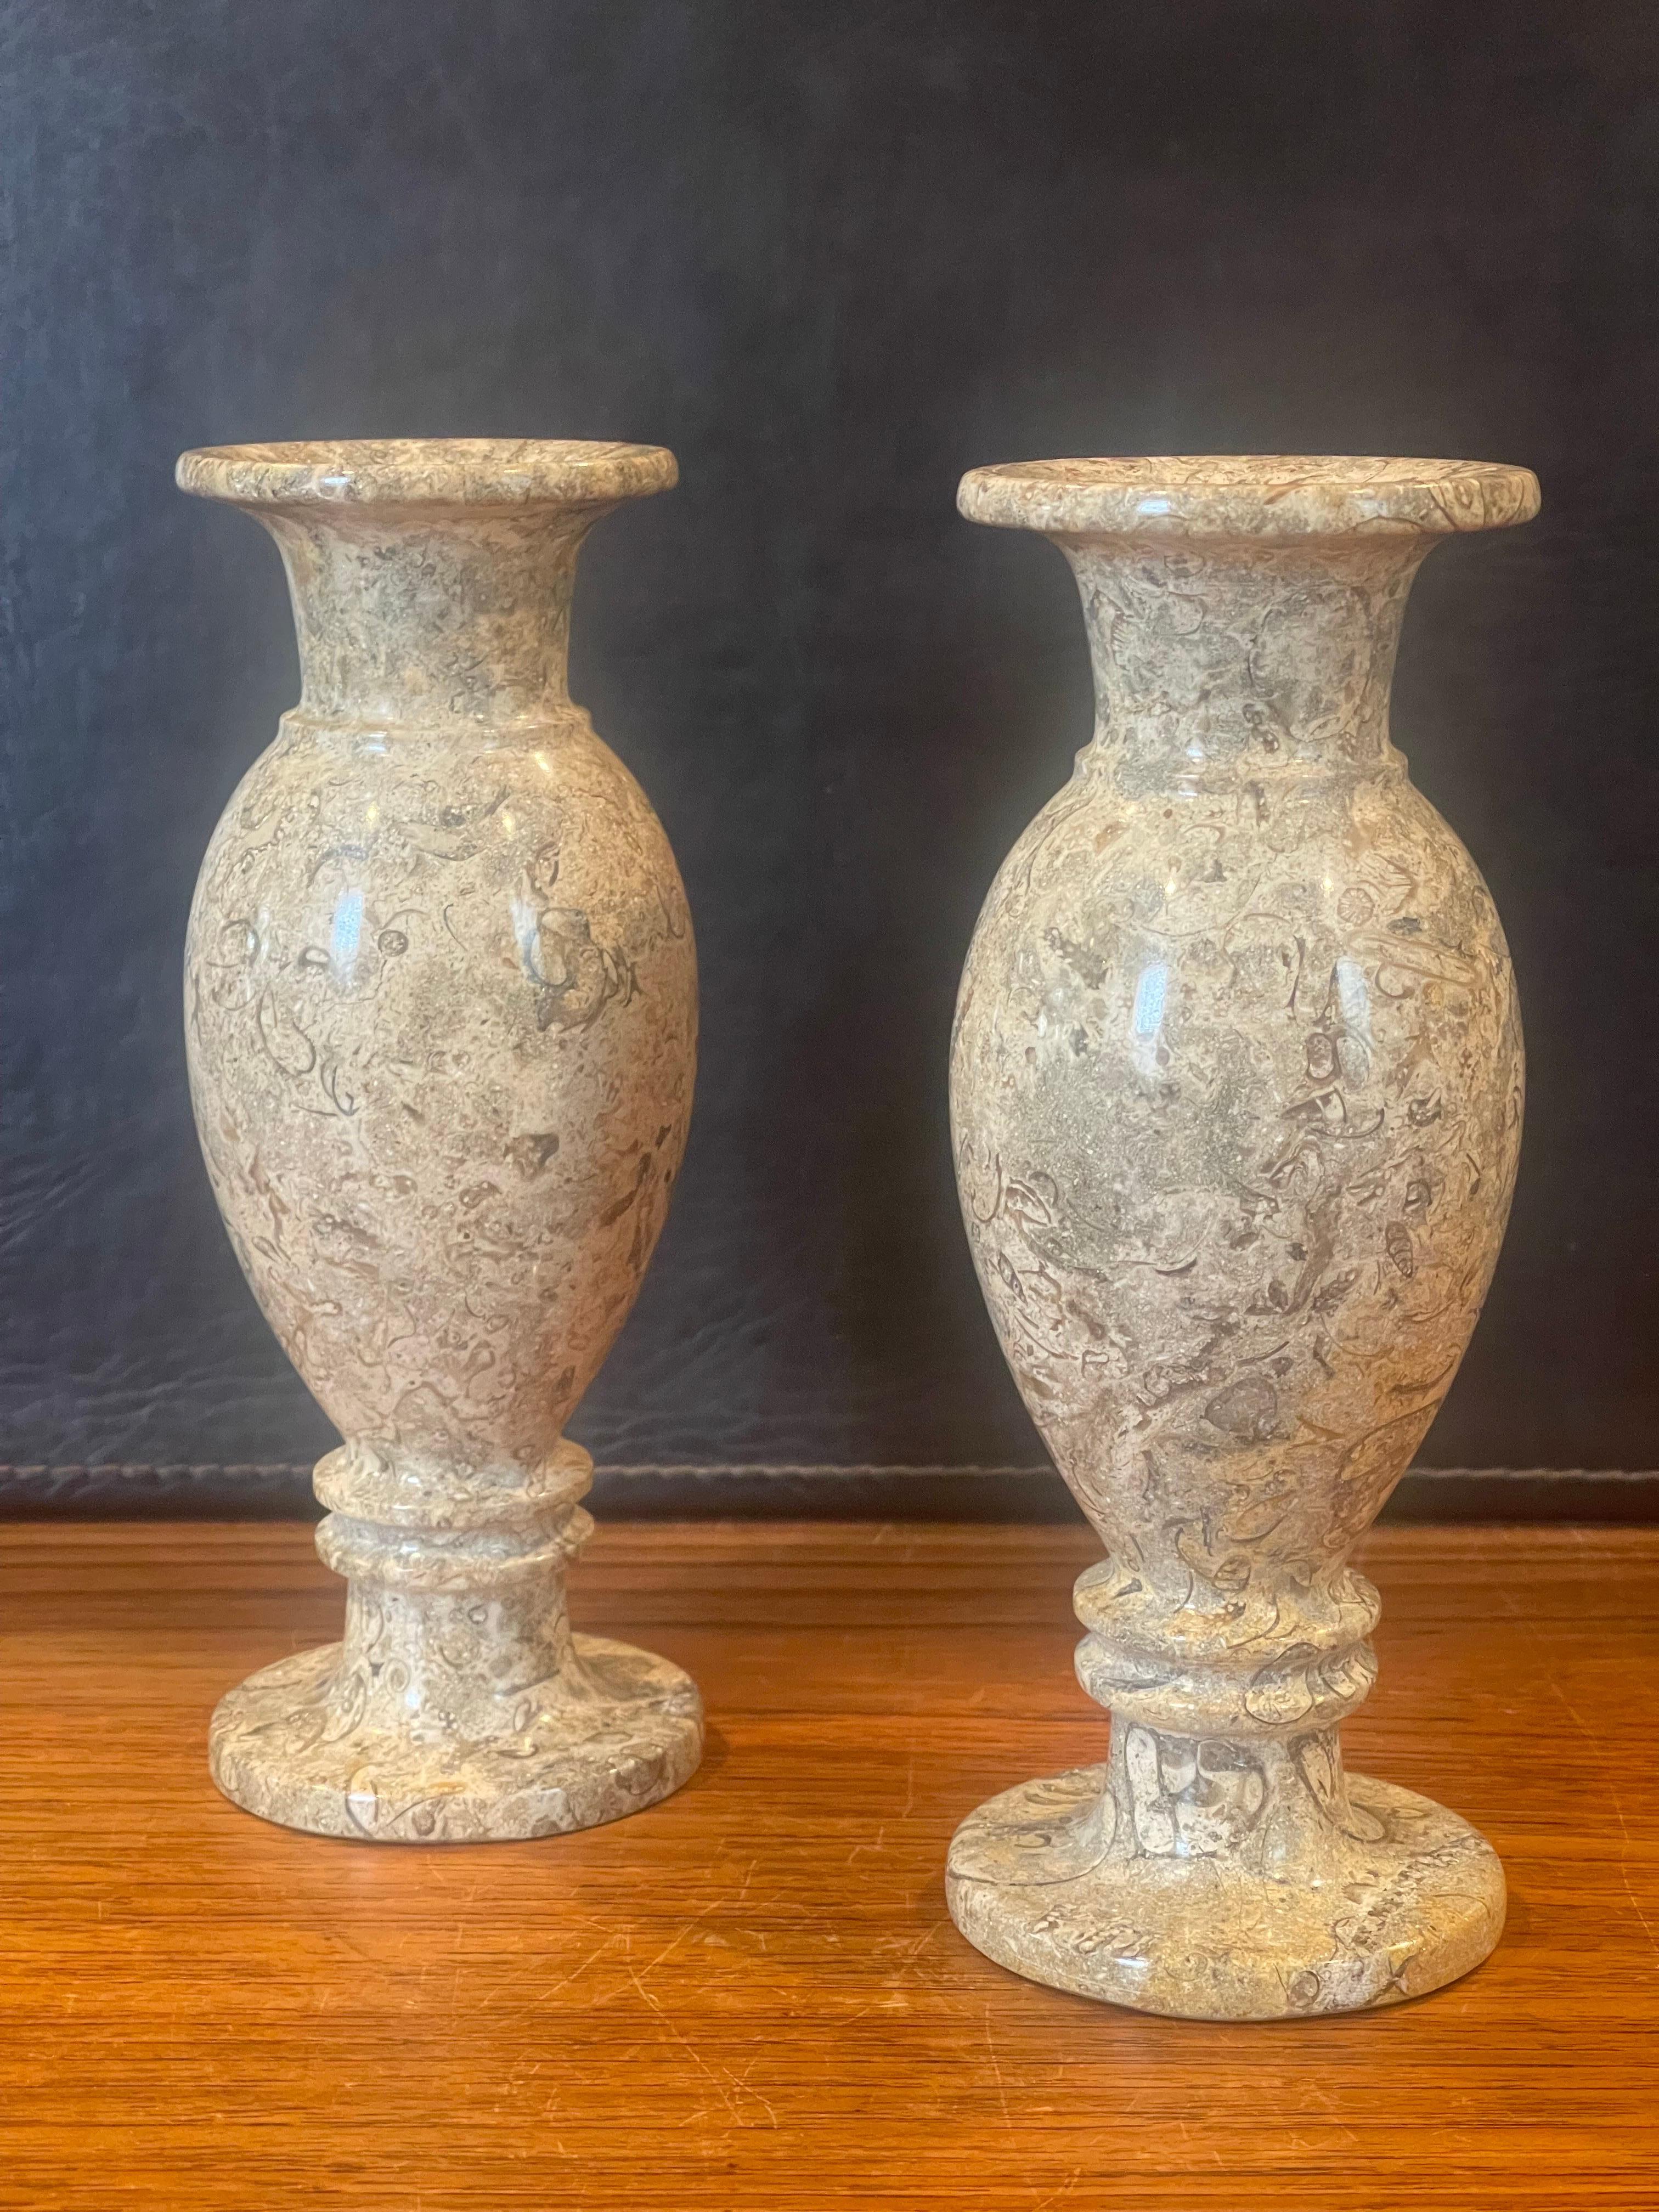 Magnifique paire de vases postmodernes italiens en marbre, vers les années 1970. Chaque vase est orné de mouchetures de couleur beige, brune, blanche et crème. La paire est en très bon état, sans éclats ni fissures, et mesure 3 